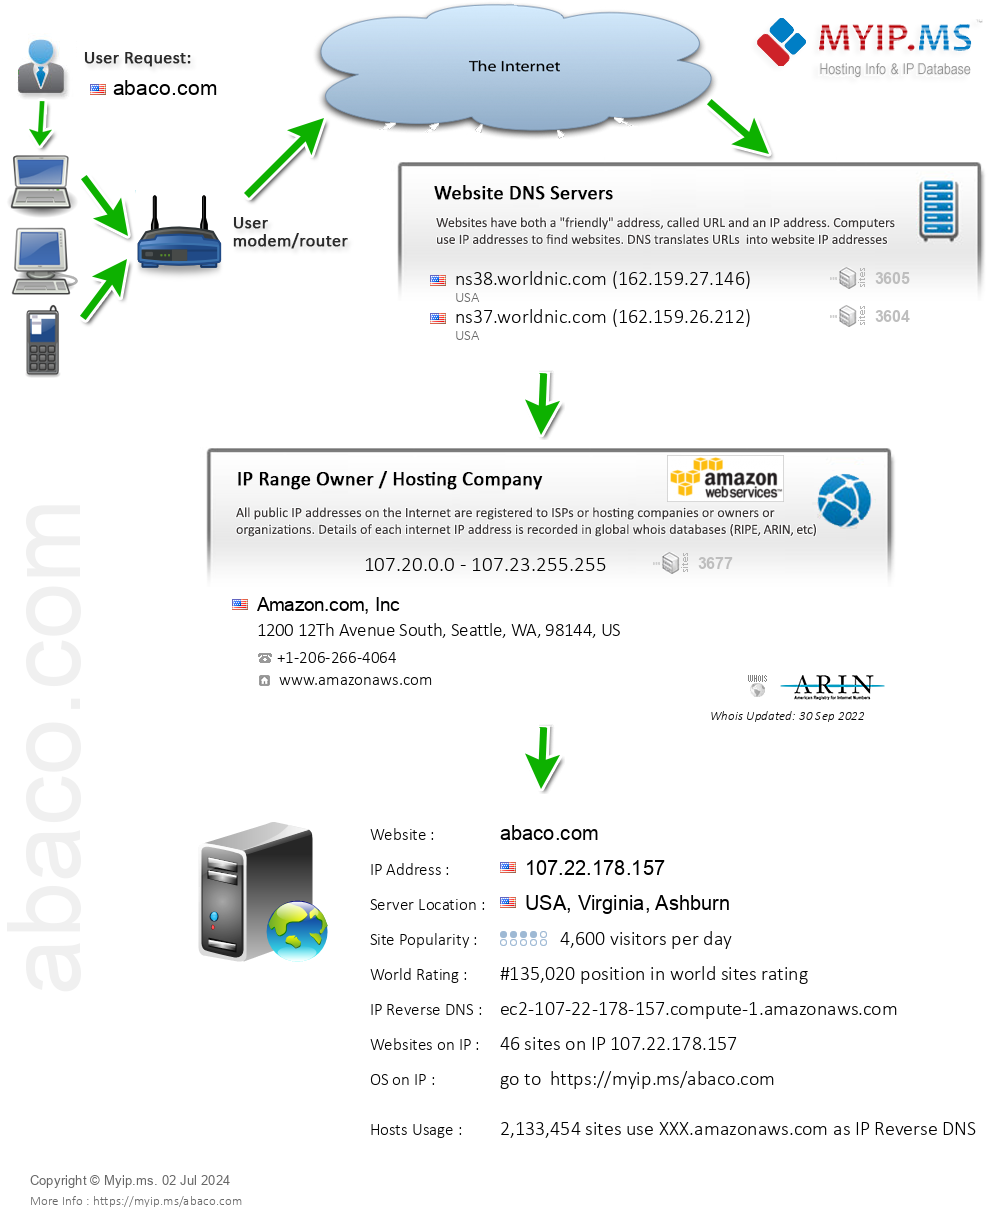 Abaco.com - Website Hosting Visual IP Diagram